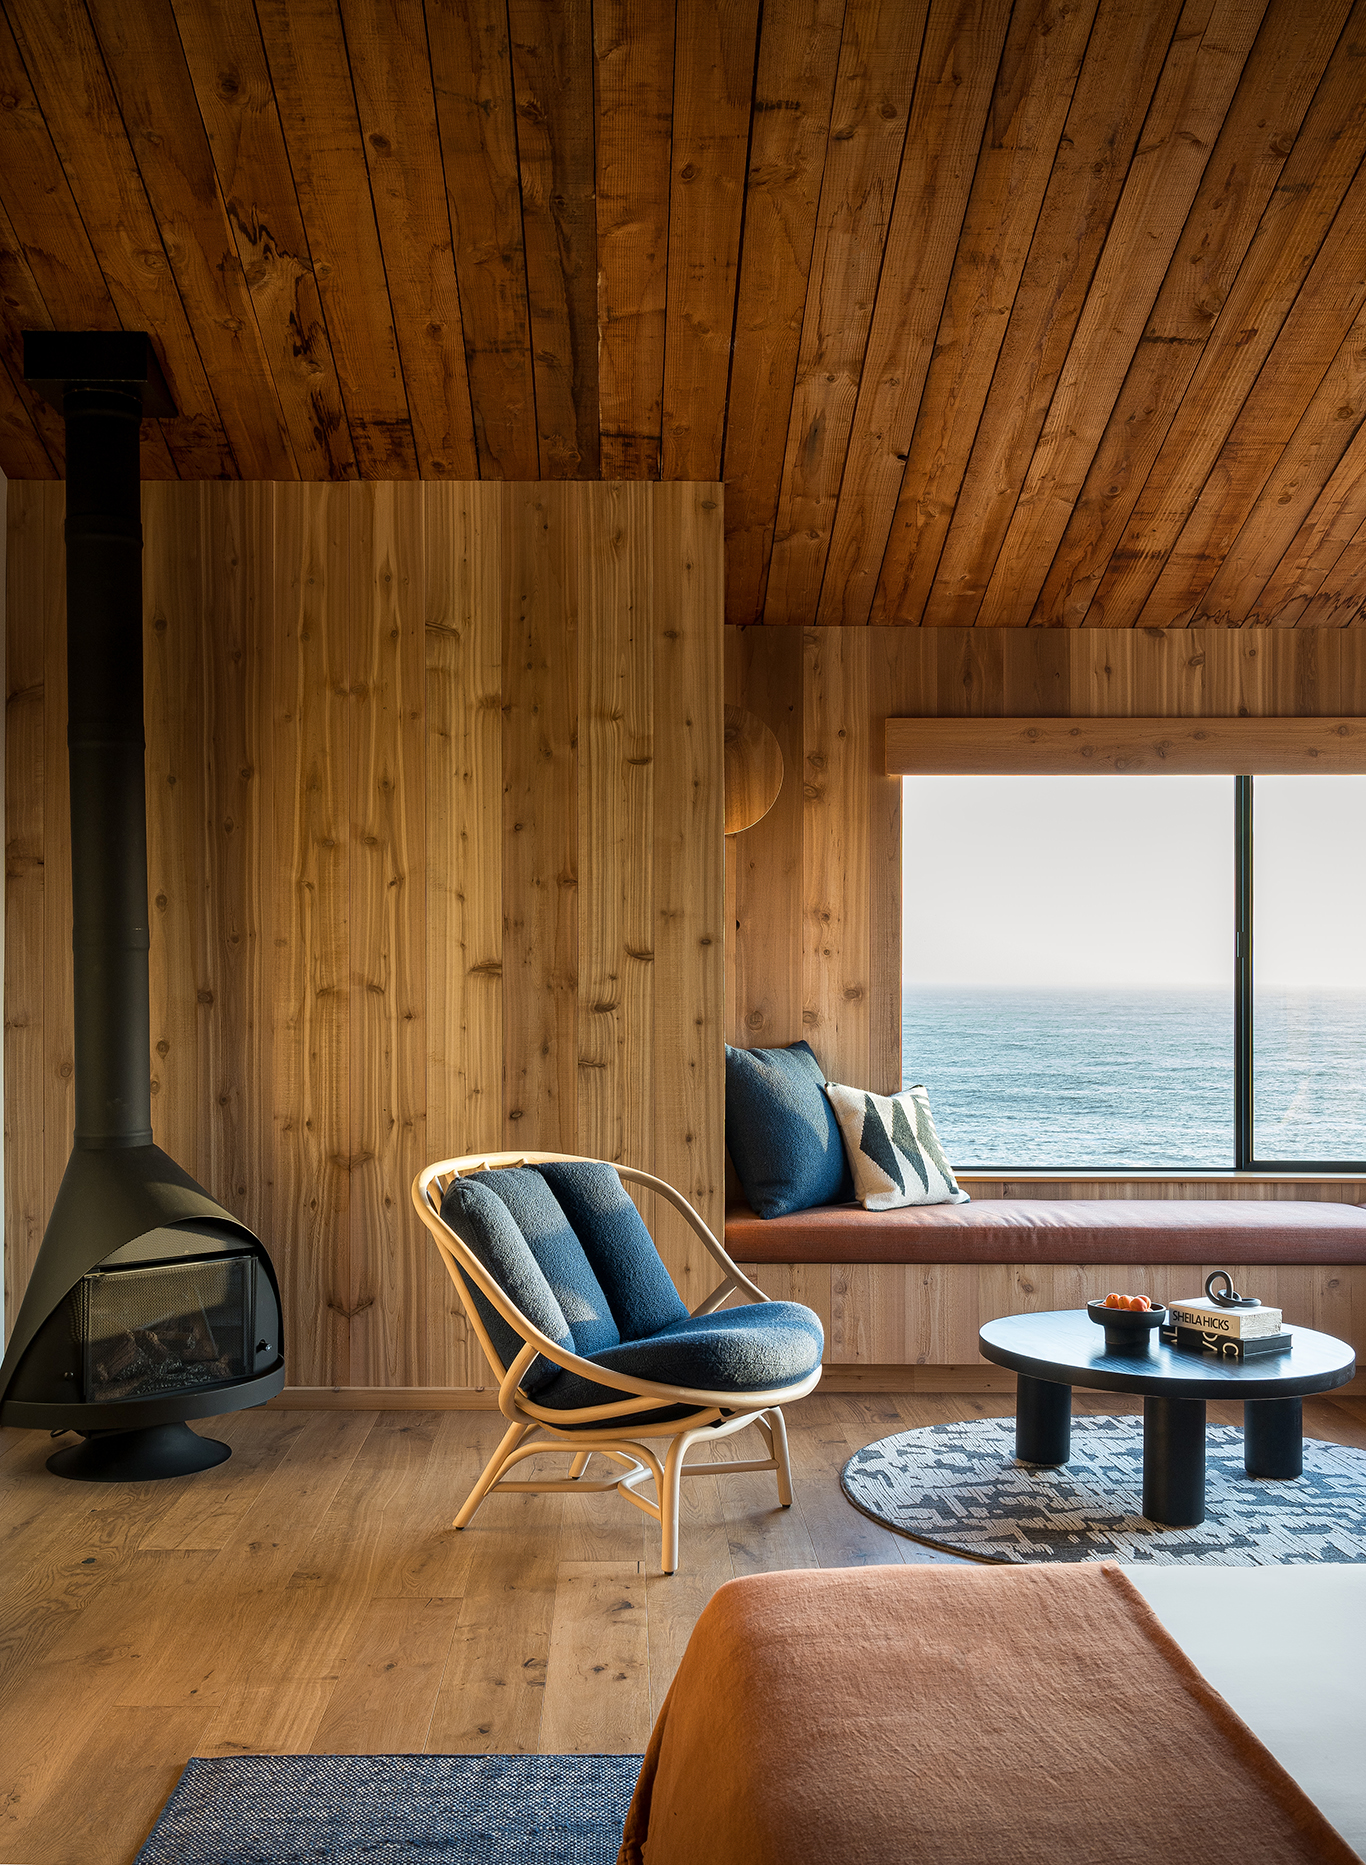 projekte - indoor projekte - hotels - design und natur vereinen sich in der sea ranch lodge